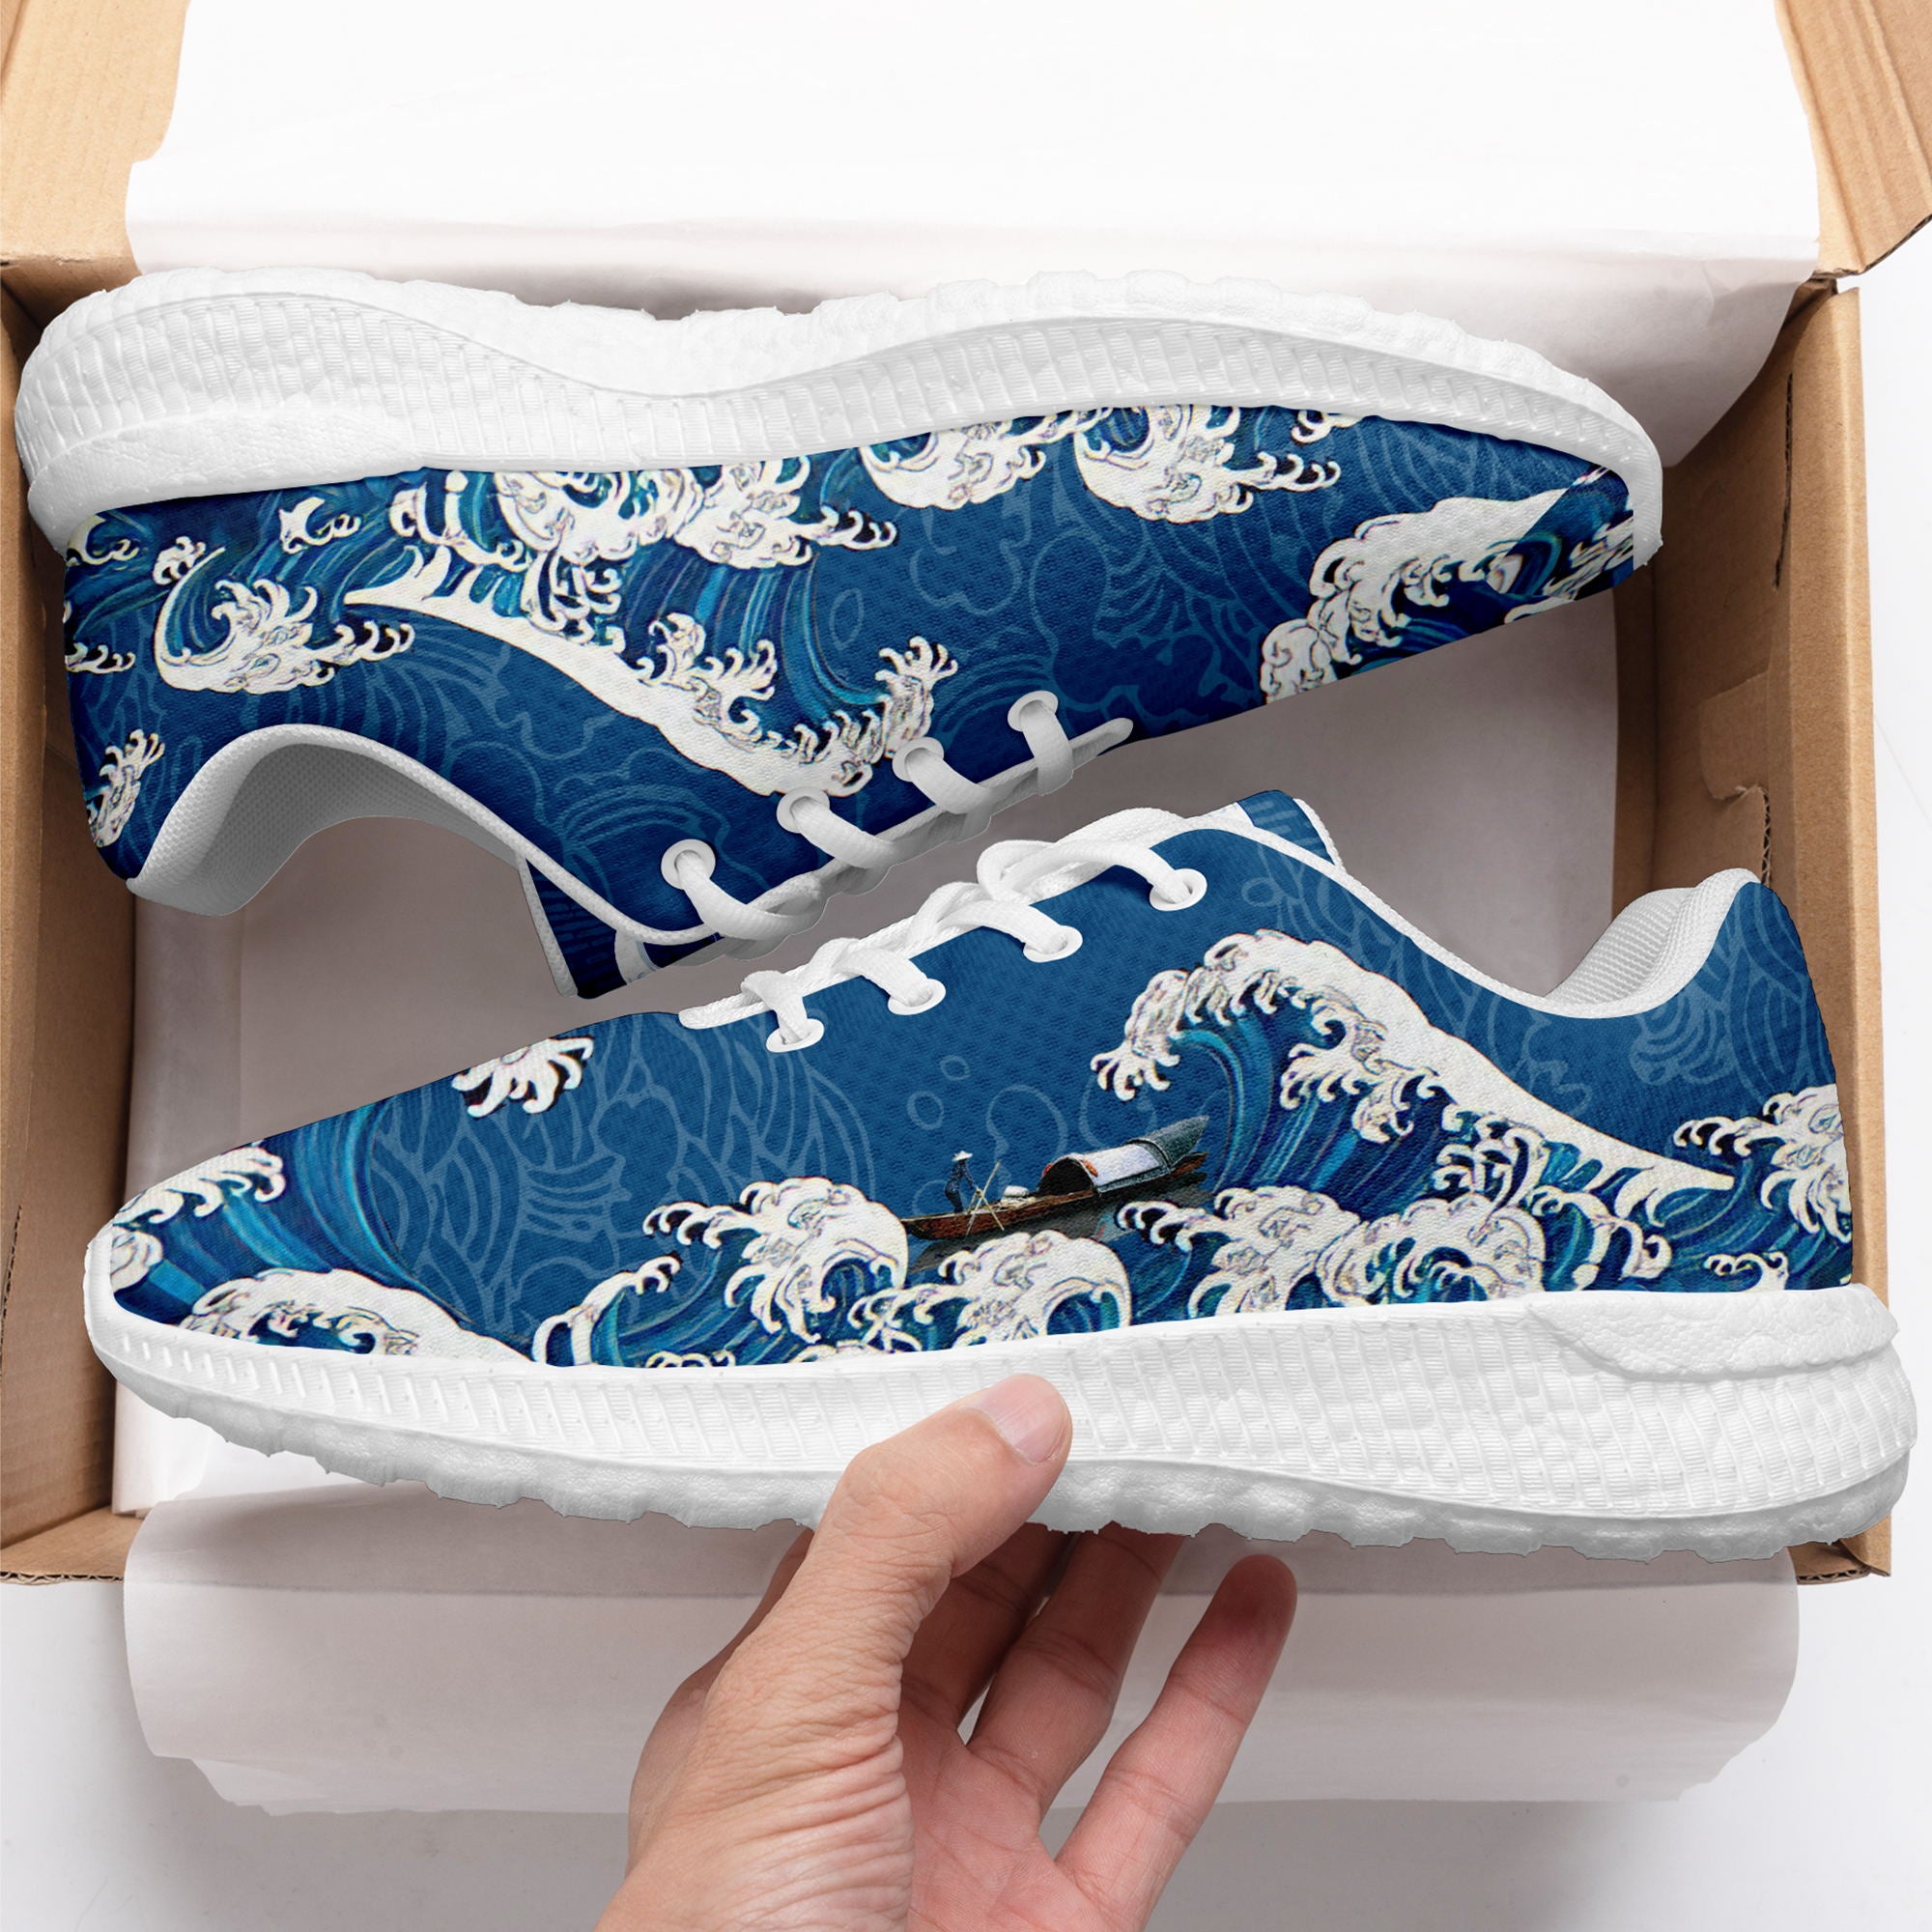 柔性定制个性化打印设计跑鞋时尚中国莆田妈祖特色主题运动鞋蓝色BLD2-6